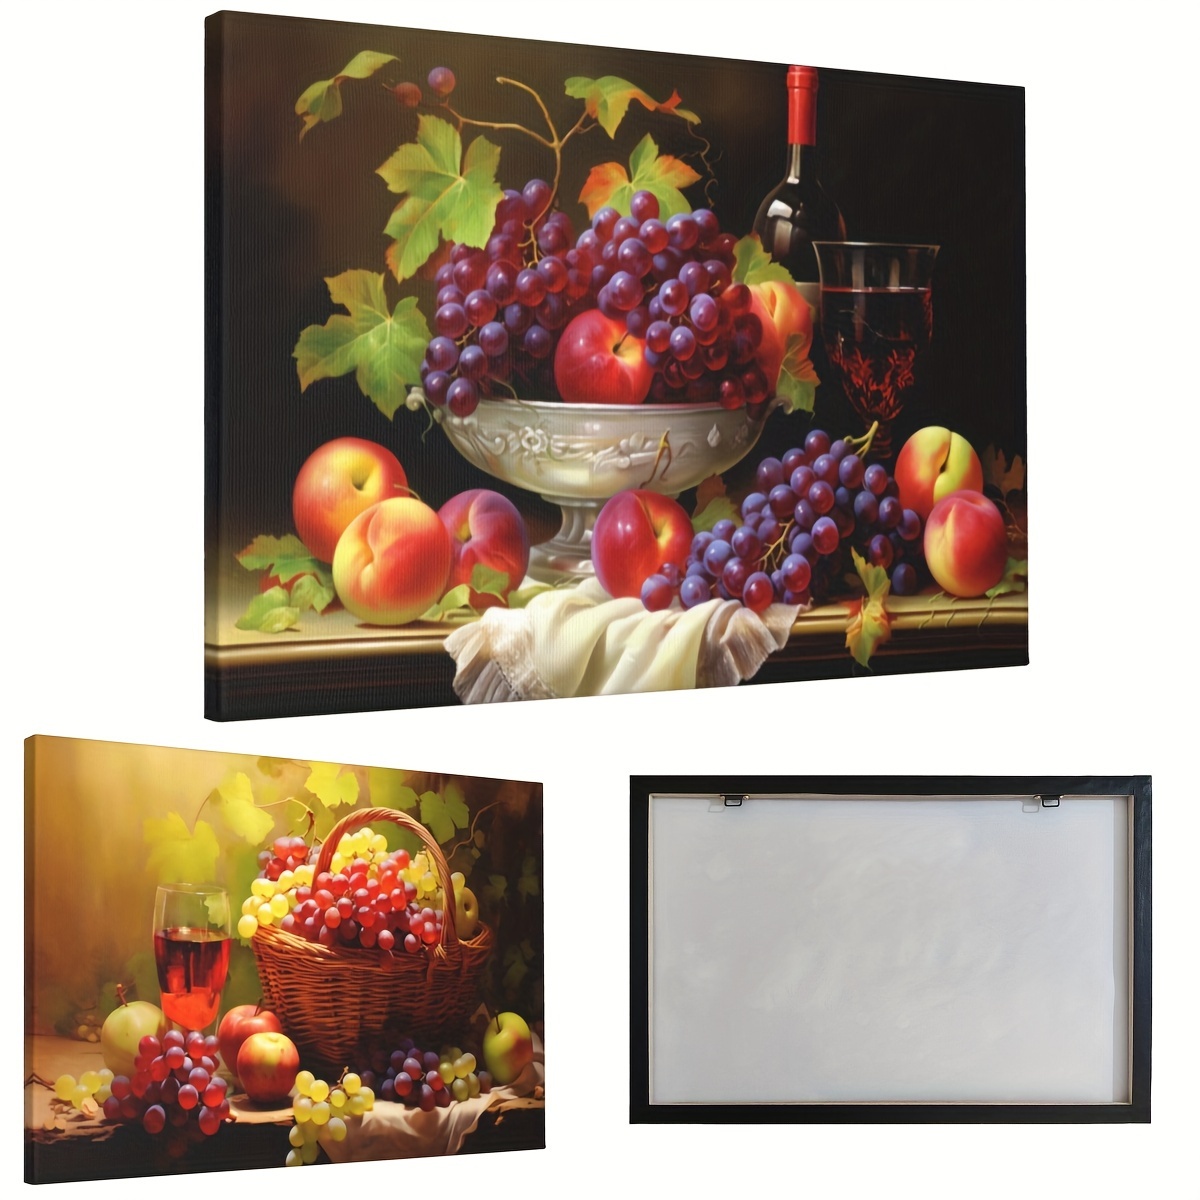  Arte de pared de comedor y cocina, arte moderno de pared,  cuadros para cocina y comedor, copas de vino, lienzo de frutas para  decoración de cocina, comedor, cocina, arte de pared